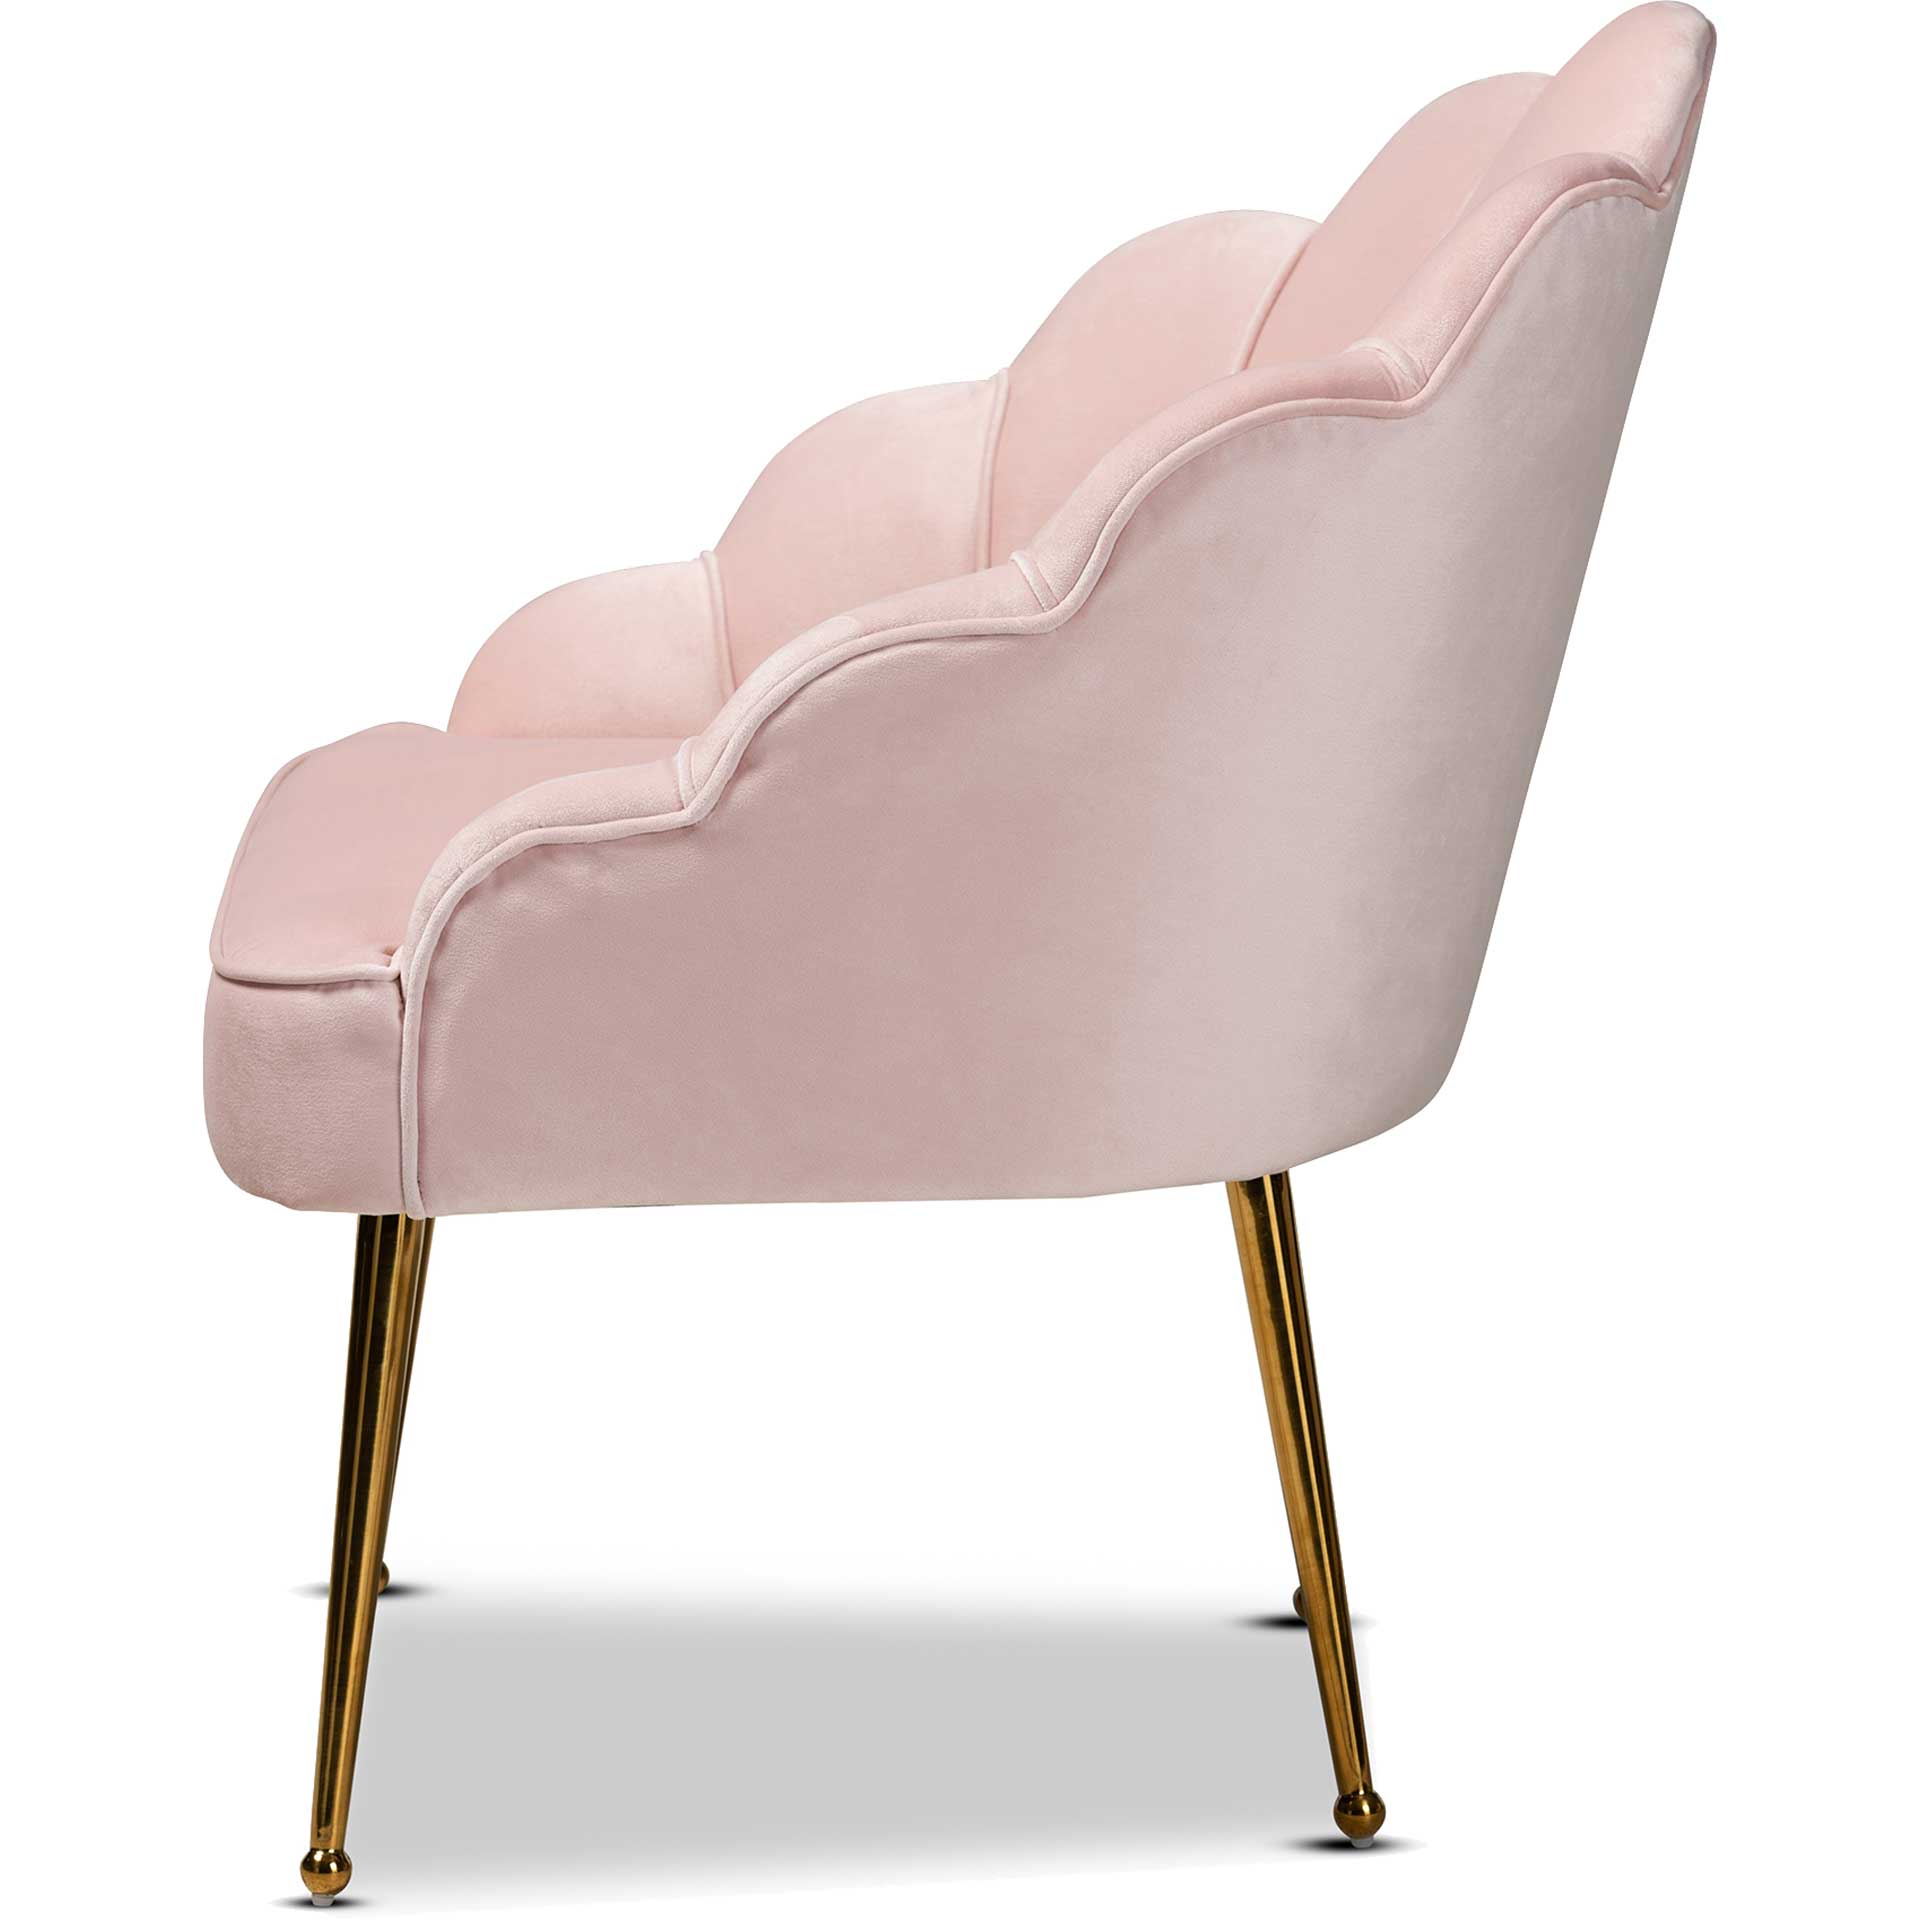 Ciarra Velvet Fabric Upholstered Chair Light Pink/Gold